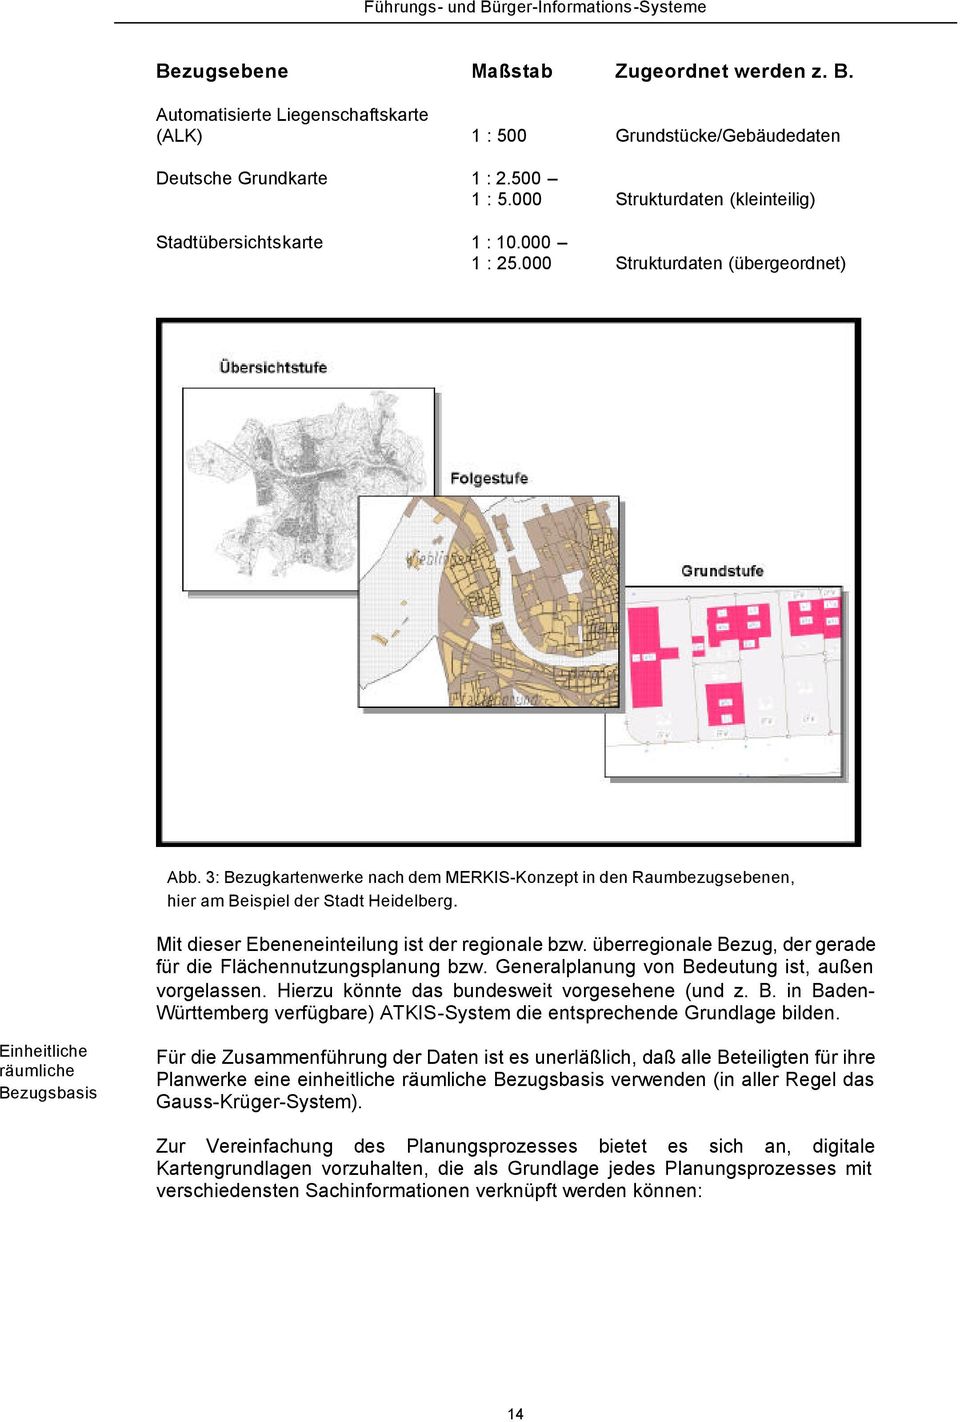 3: Bezugkartenwerke nach dem MERKIS-Konzept in den Raumbezugsebenen, hier am Beispiel der Stadt Heidelberg. Mit dieser Ebeneneinteilung ist der regionale bzw.